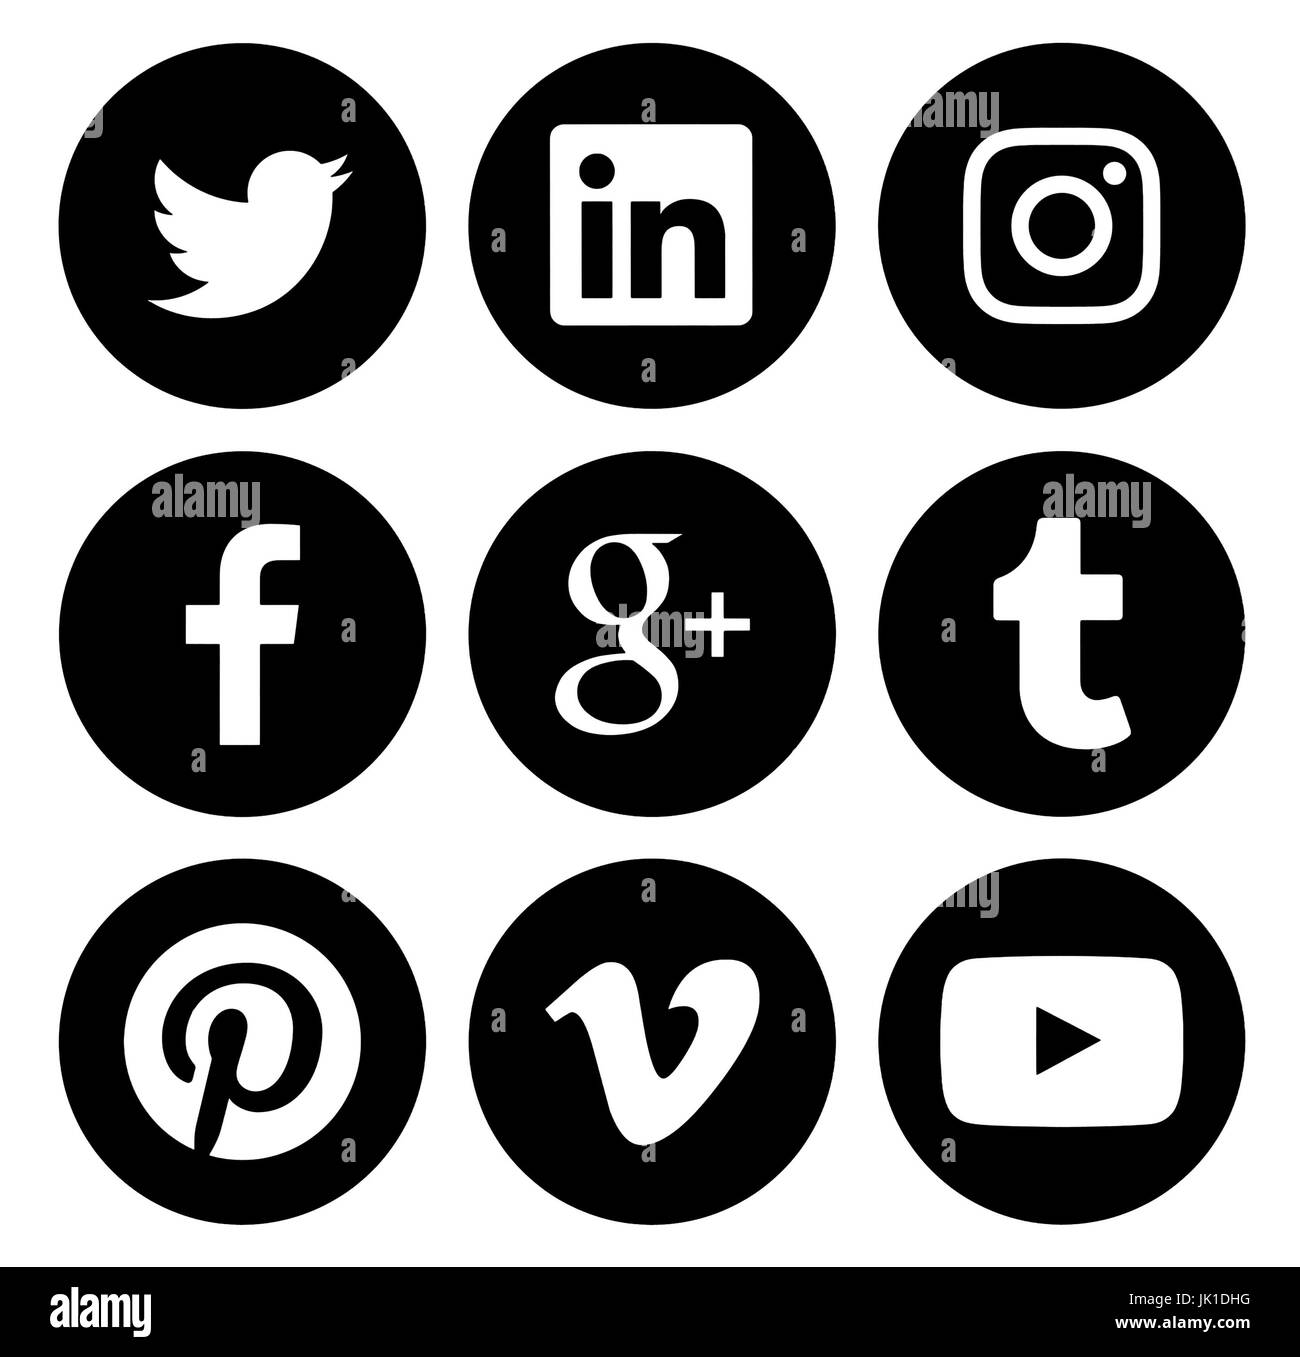 Kiev, Ukraine - Février 27, 2017 : Collection de médias sociaux populaires ronde black logos imprimés sur du papier : Facebook, Twitter, Google Plus, Instagram, P Banque D'Images